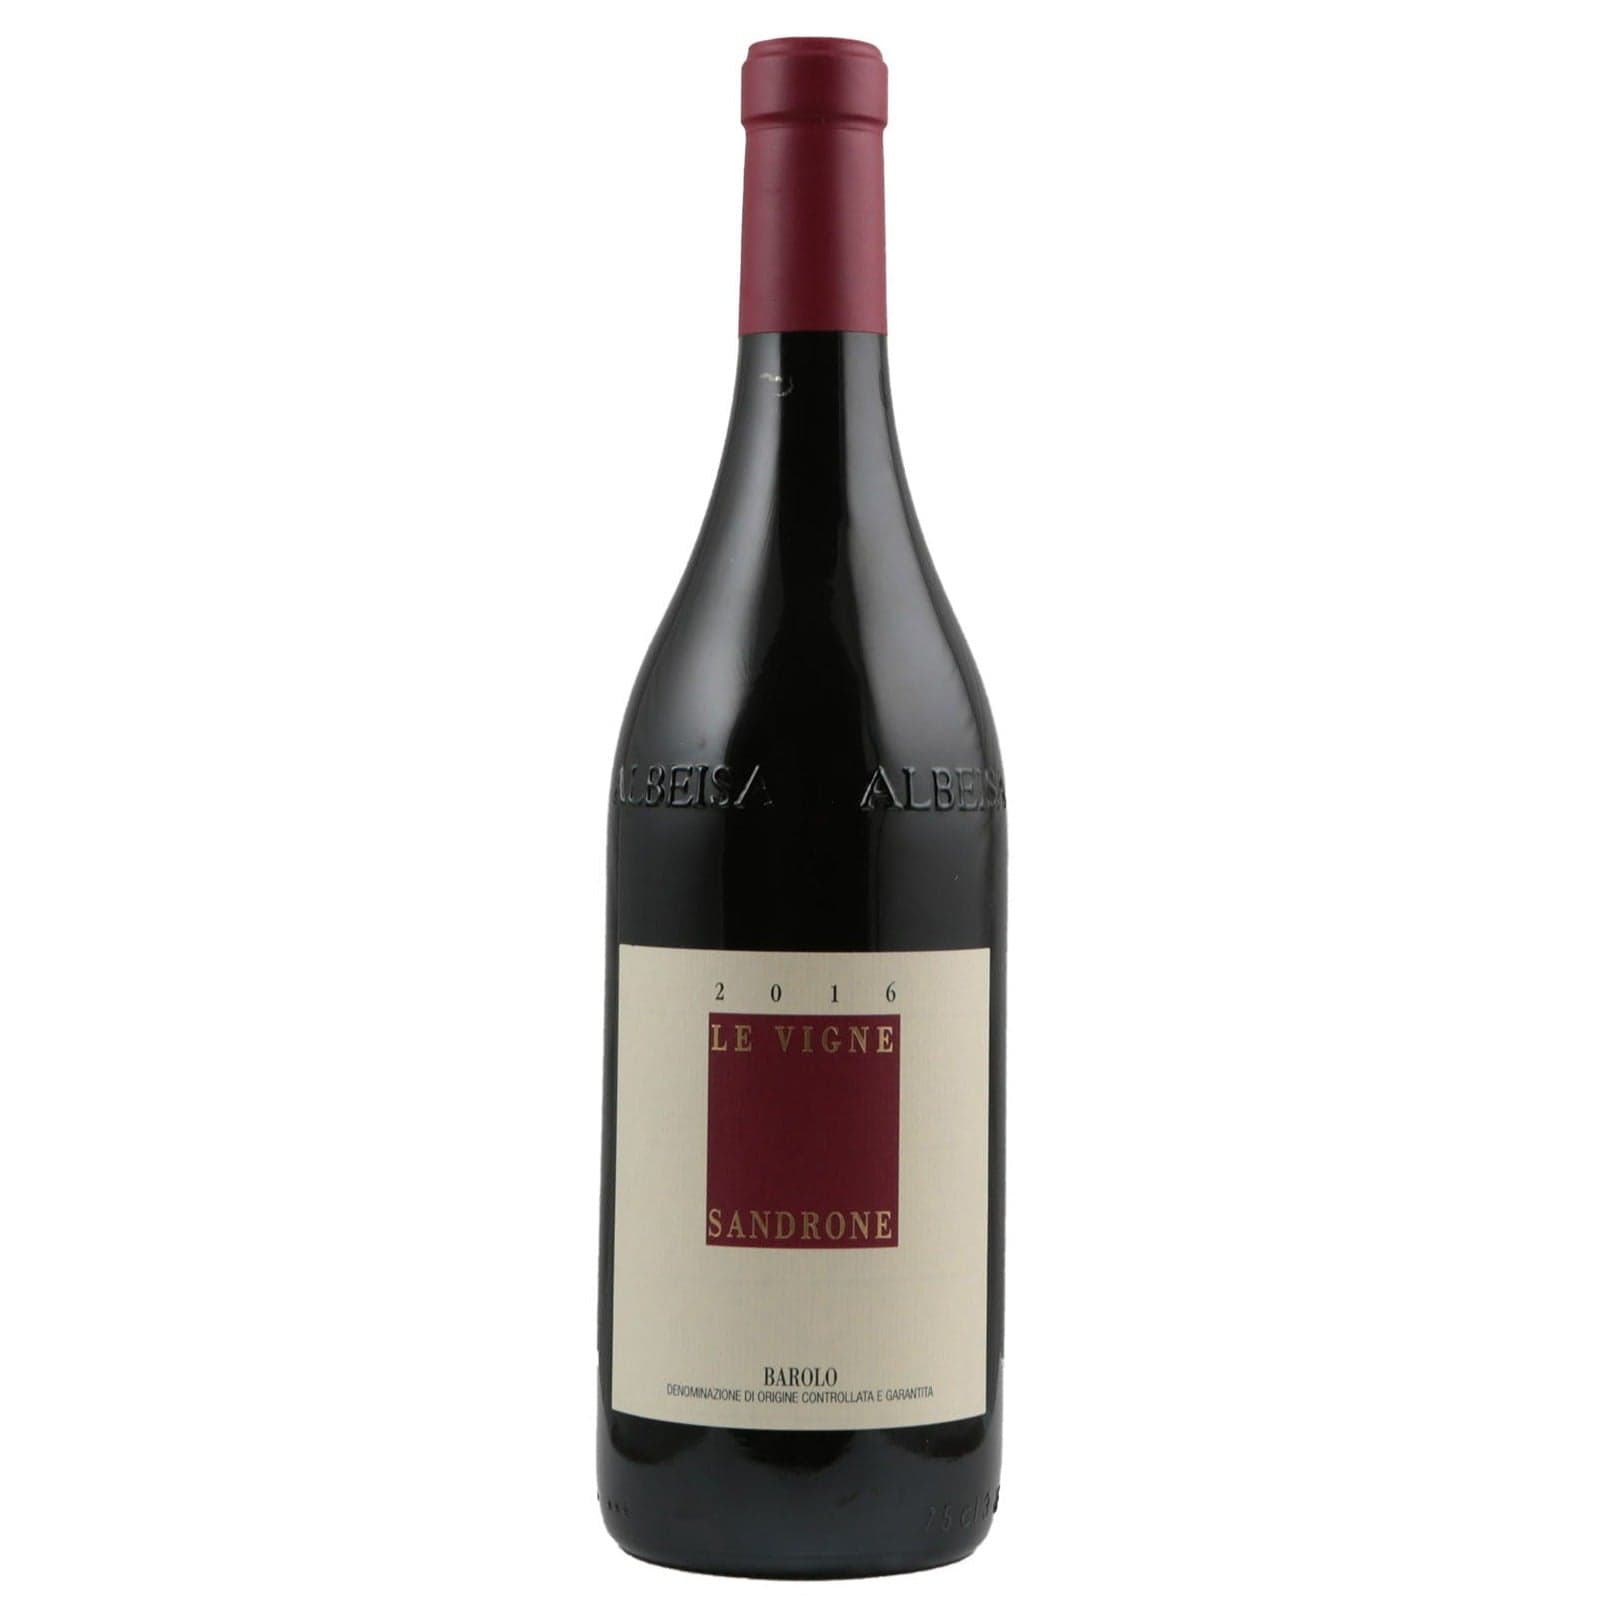 Single bottle of Red wine Luciano Sandrone, Le Vigne, Barolo, 2016 100% Nebbiolo